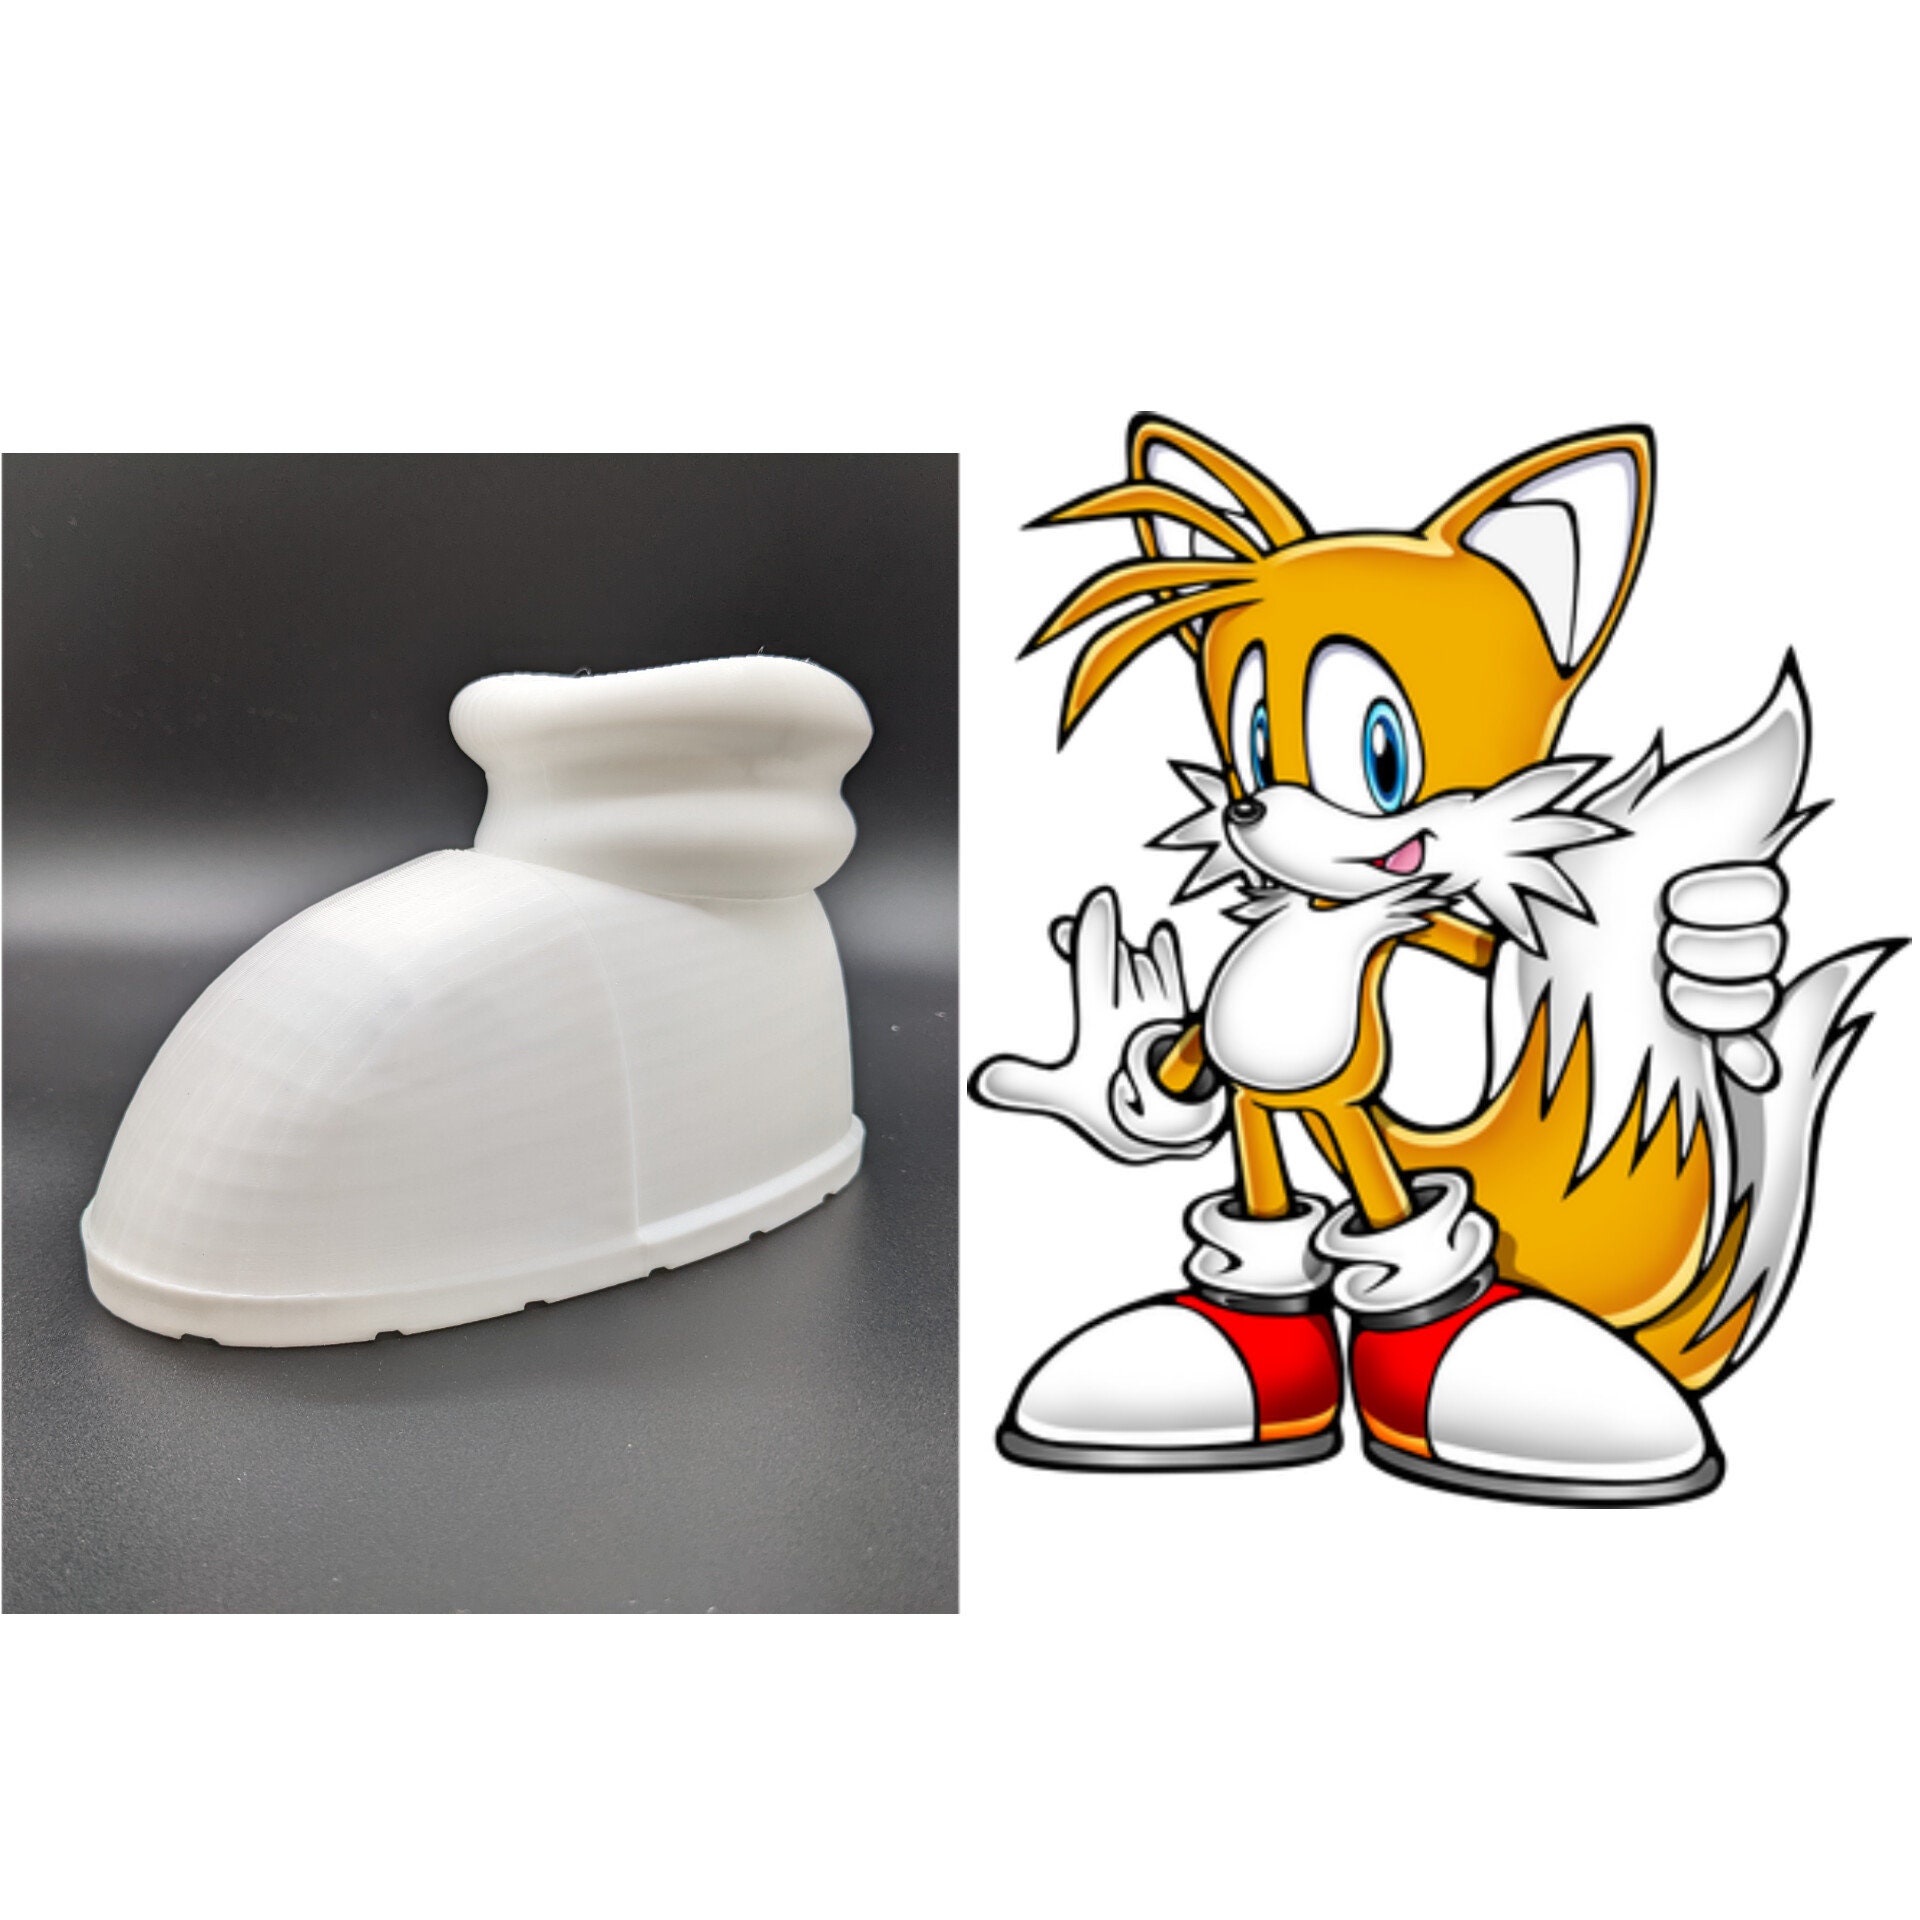 Sonic the Hedgehog Chia Pet®